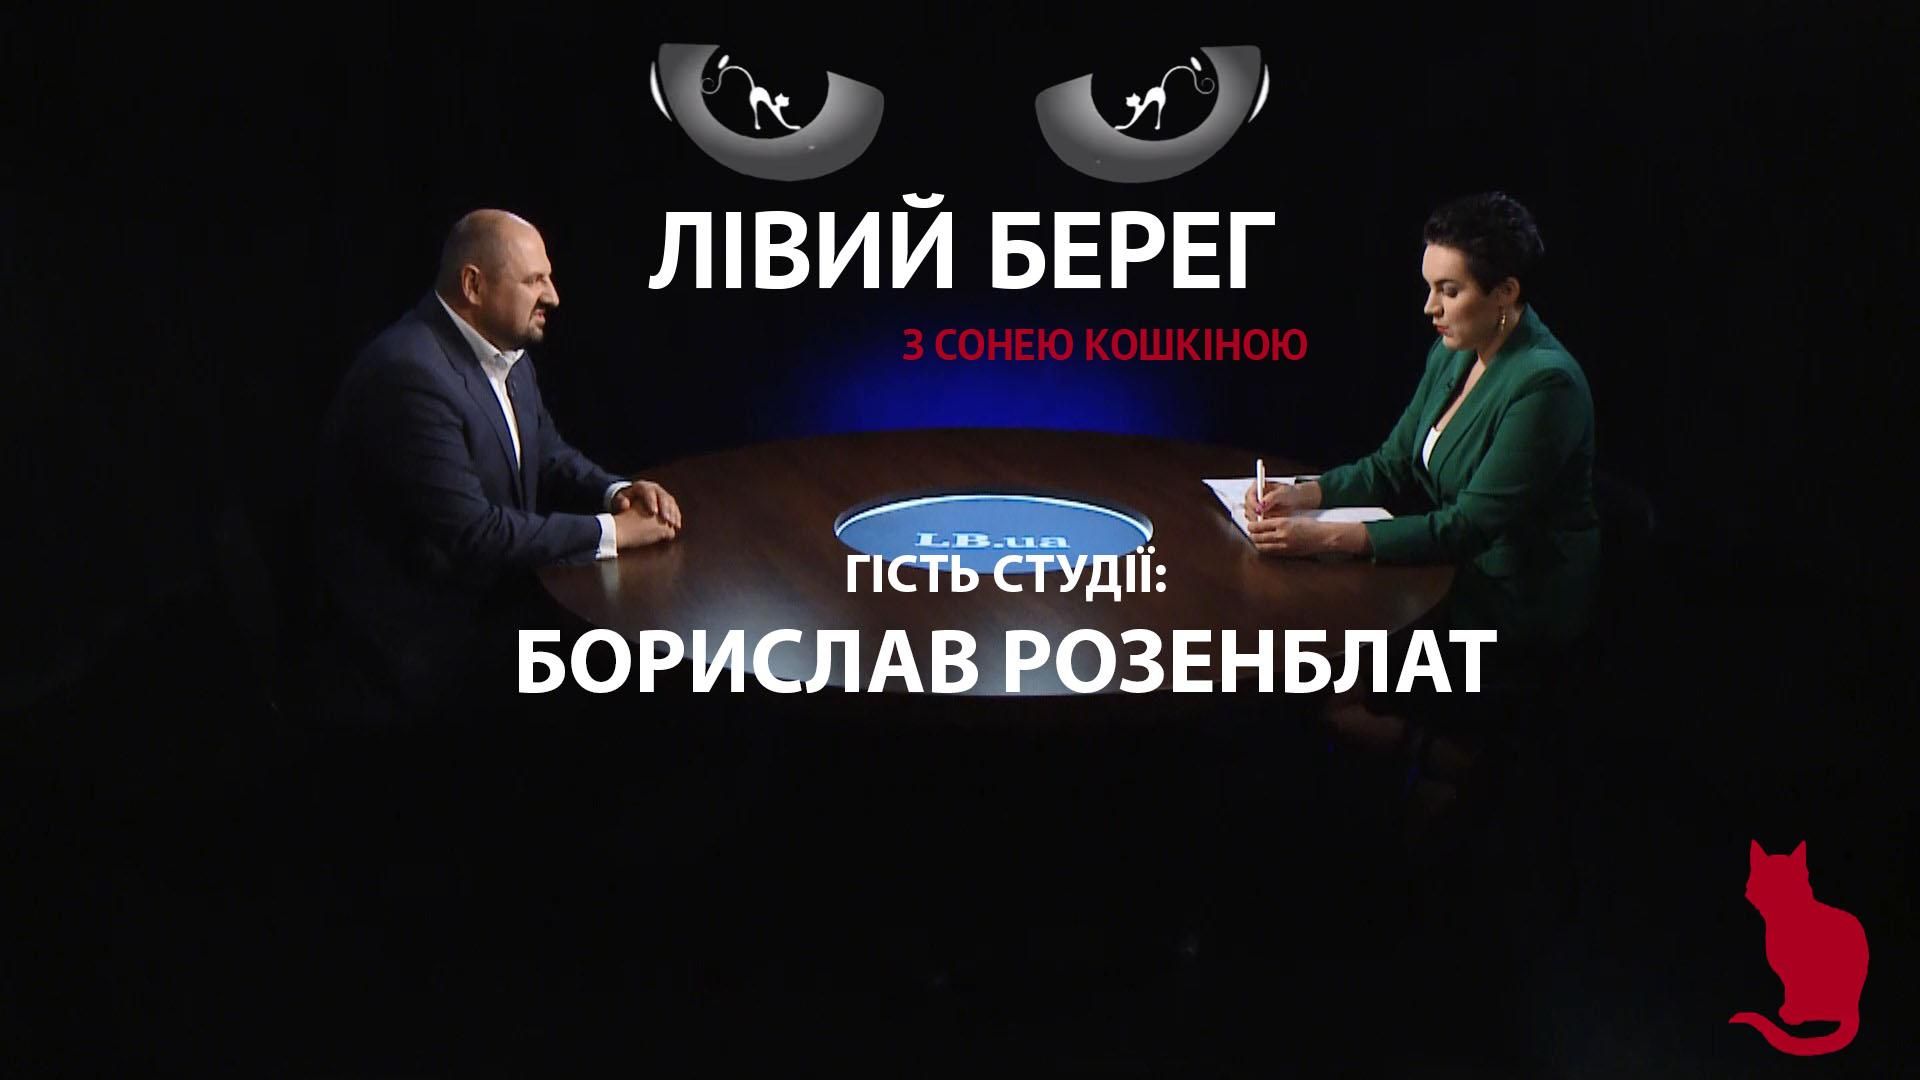 Про уголовное дело, взятку, янтарь и депутатство – интервью с Бориславом Розенблатом